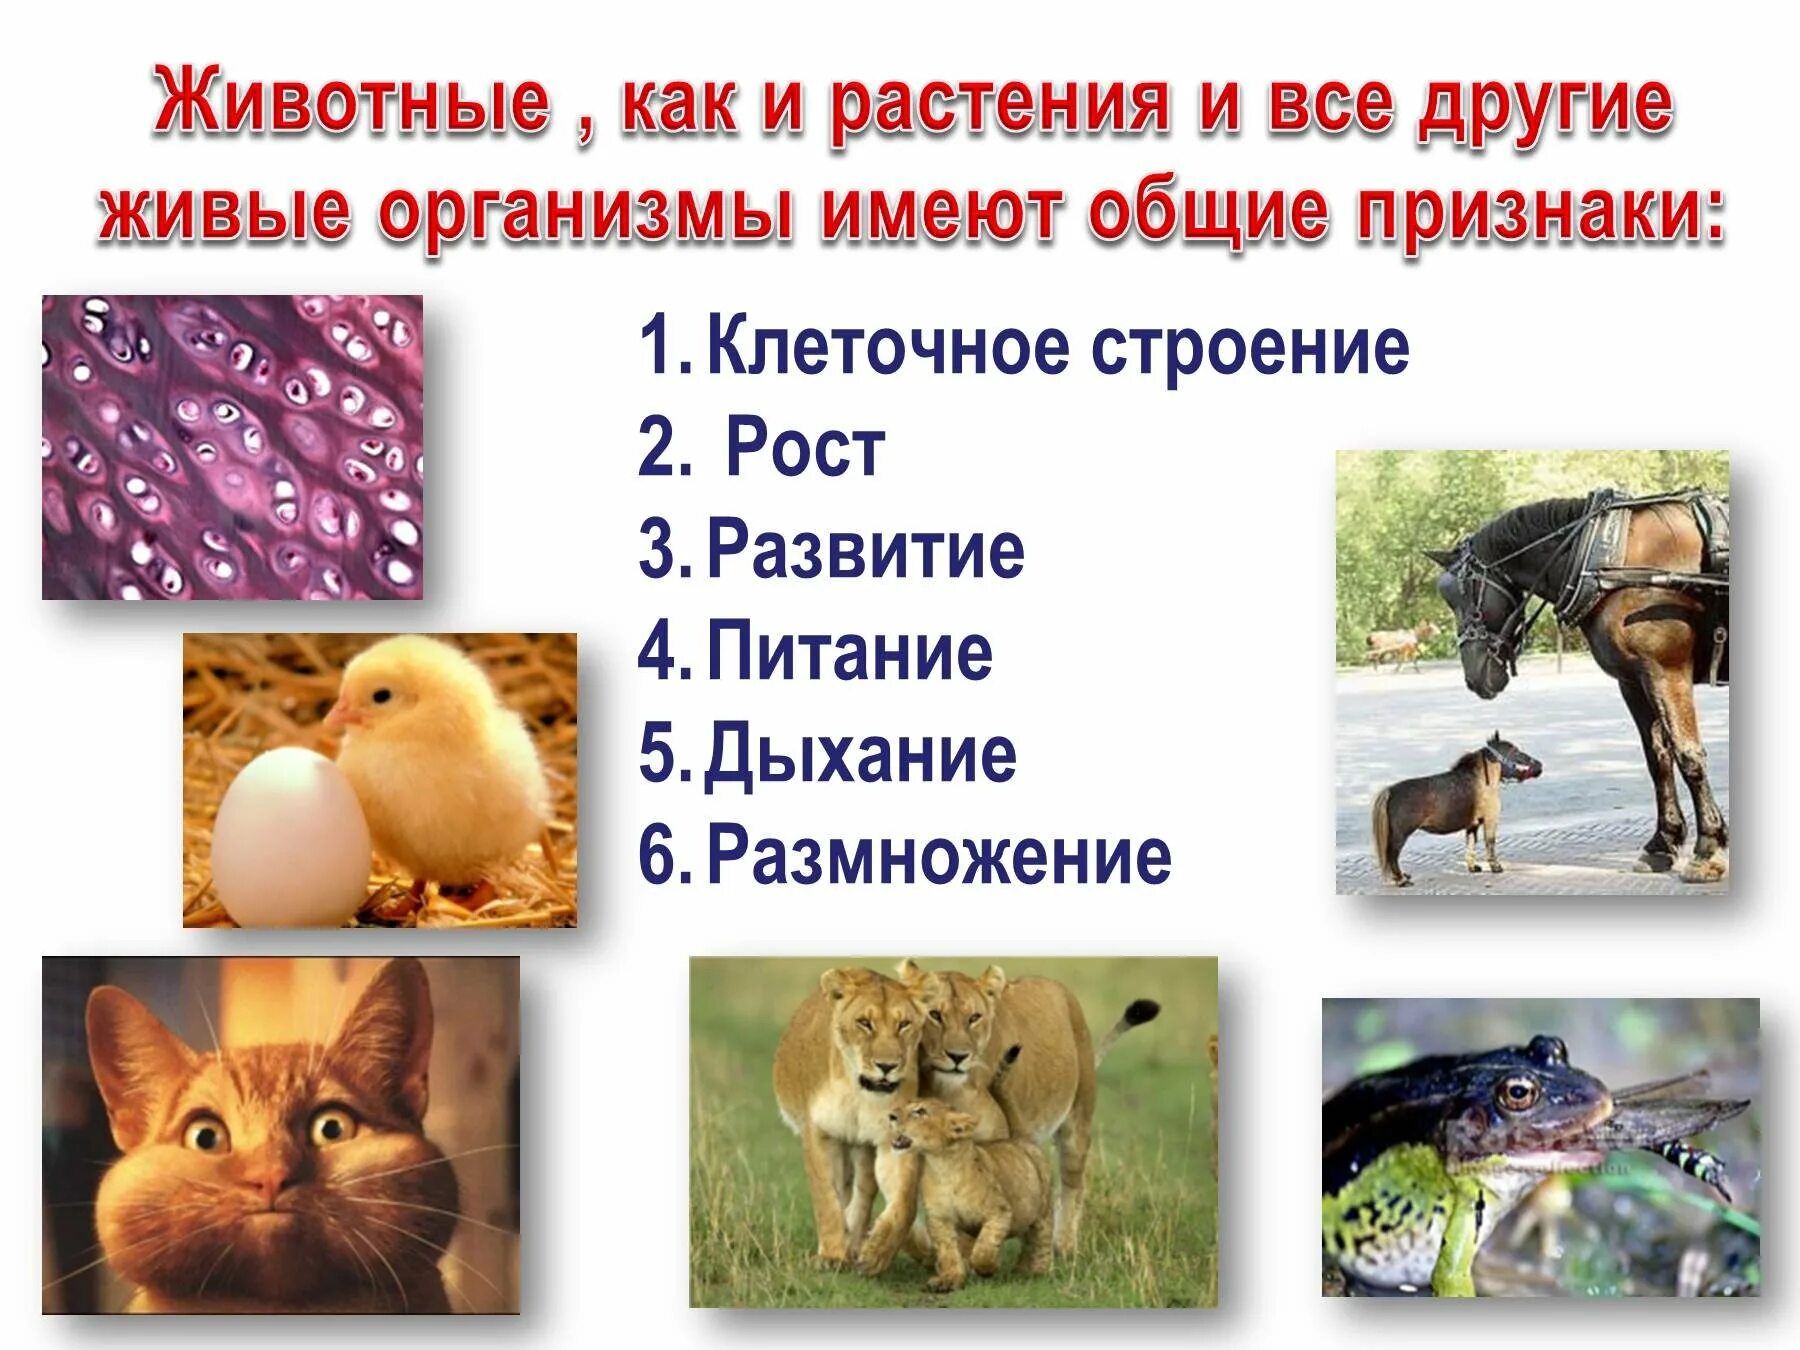 В животном царстве существует несколько веществ. Признаки животных. Характерные особенности животных. Живые организмы животные. Общие признаки животных.